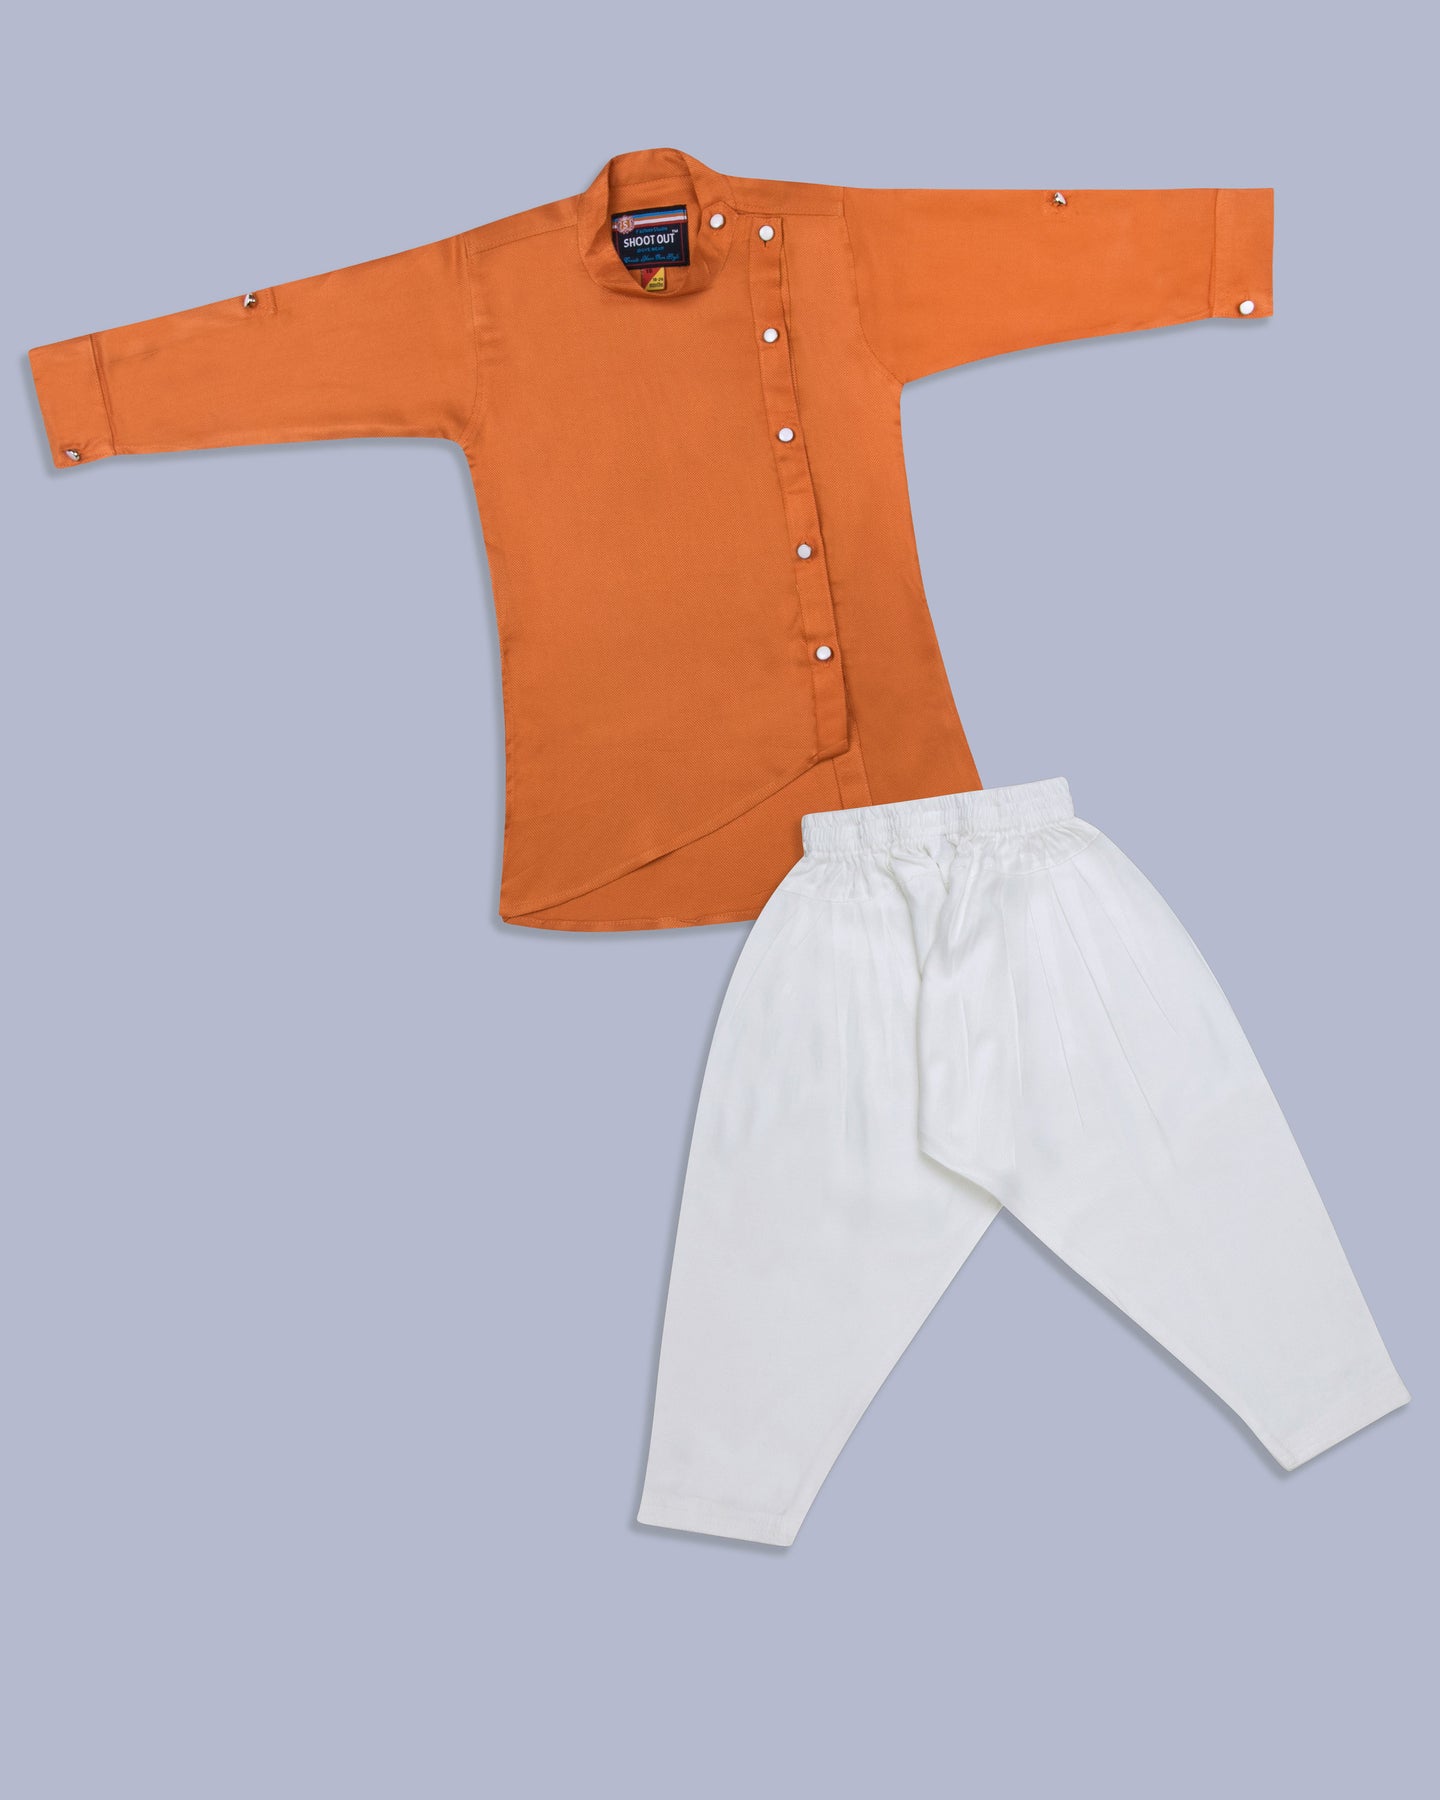 Boys Pathani Suit Orange